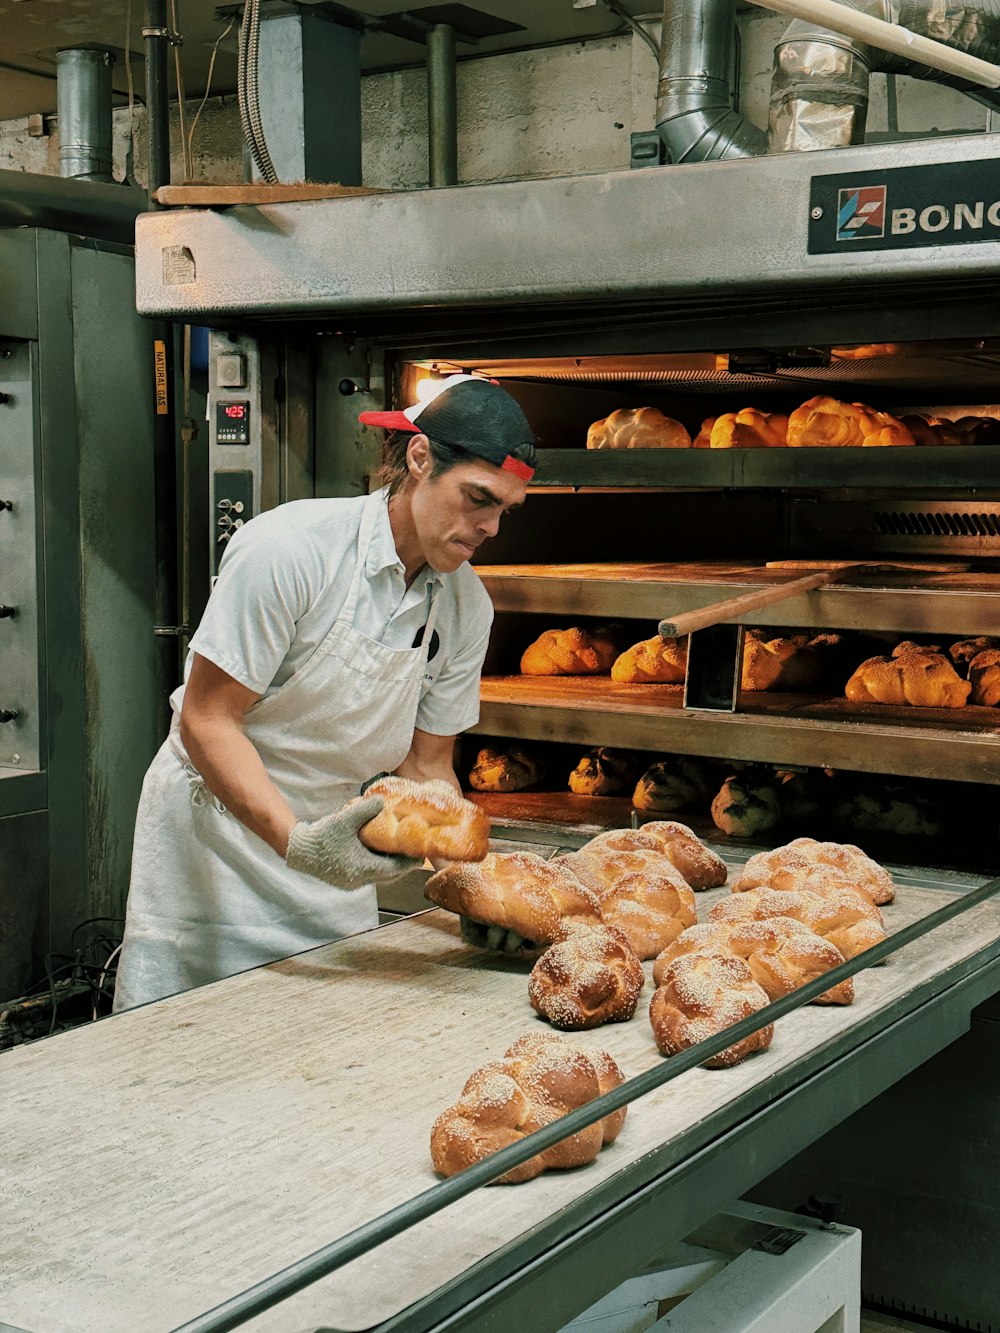 Un uomo in camicia bianca sta mettendo del pane nel forno